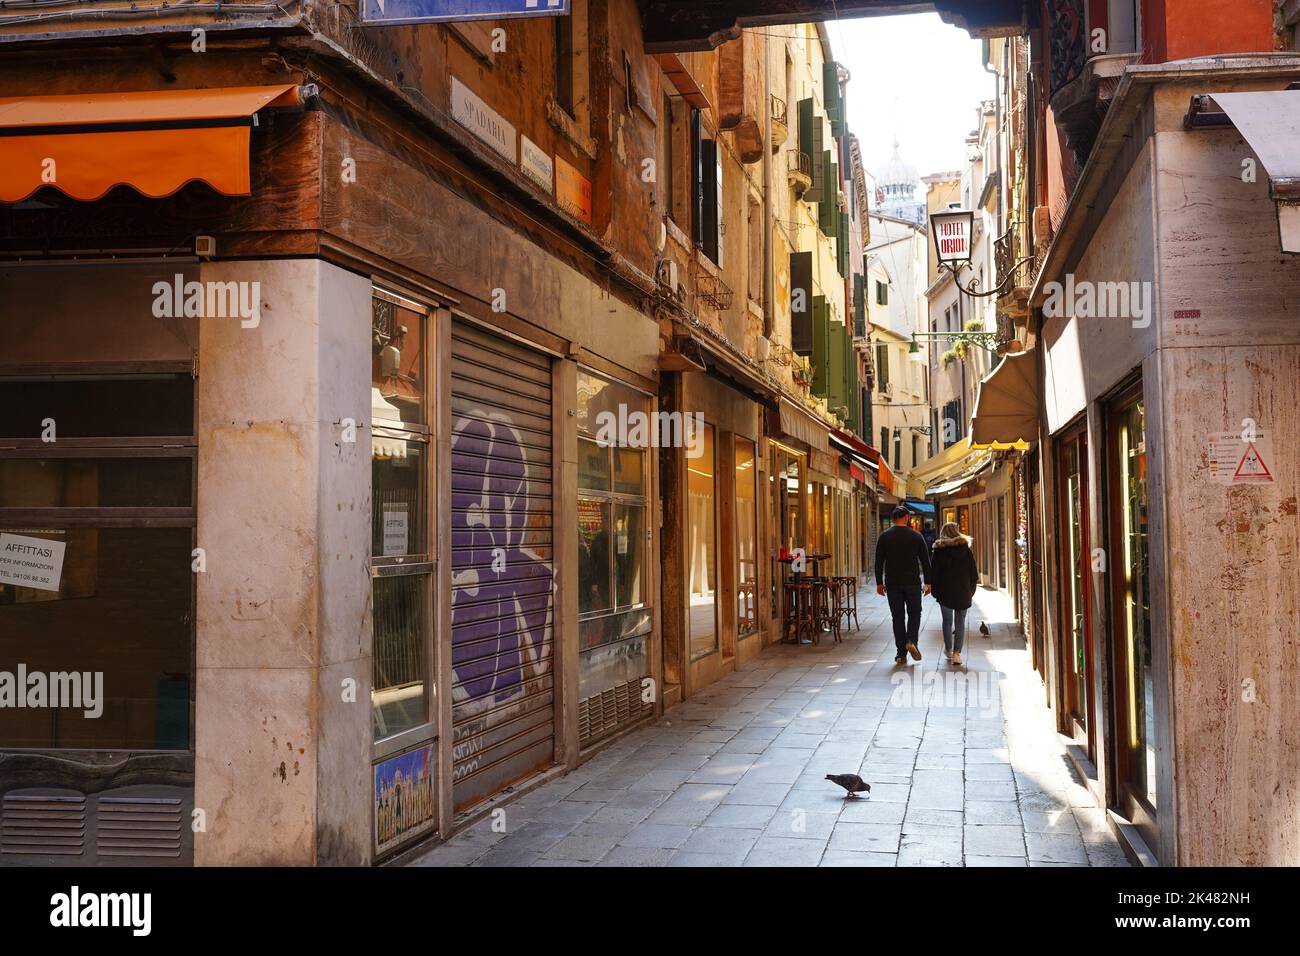 Narrow streets in the city of Venice, Italy Stock Photo